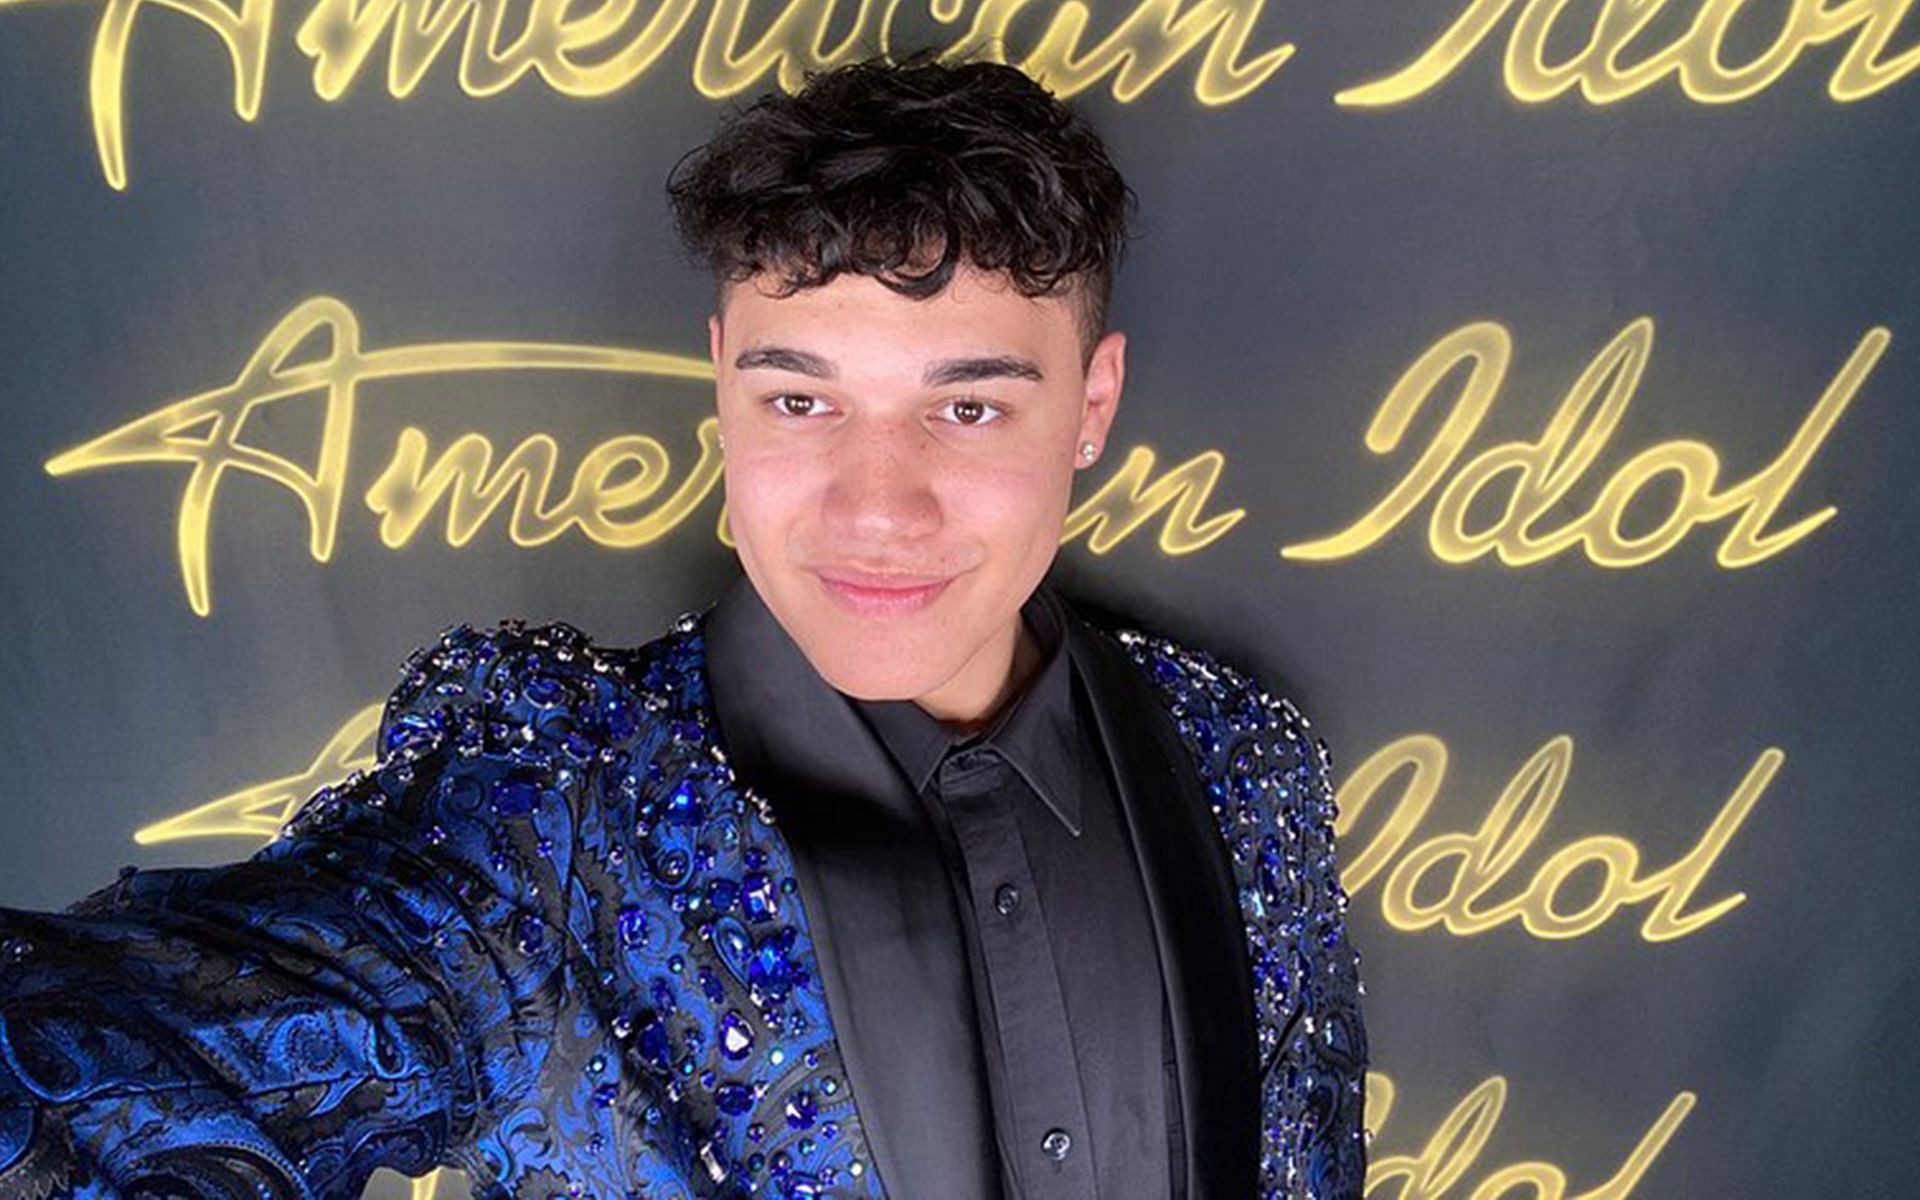 Donavan Diaz from American Idol Season 20 (Image via Instagram/donavandiazofficial)